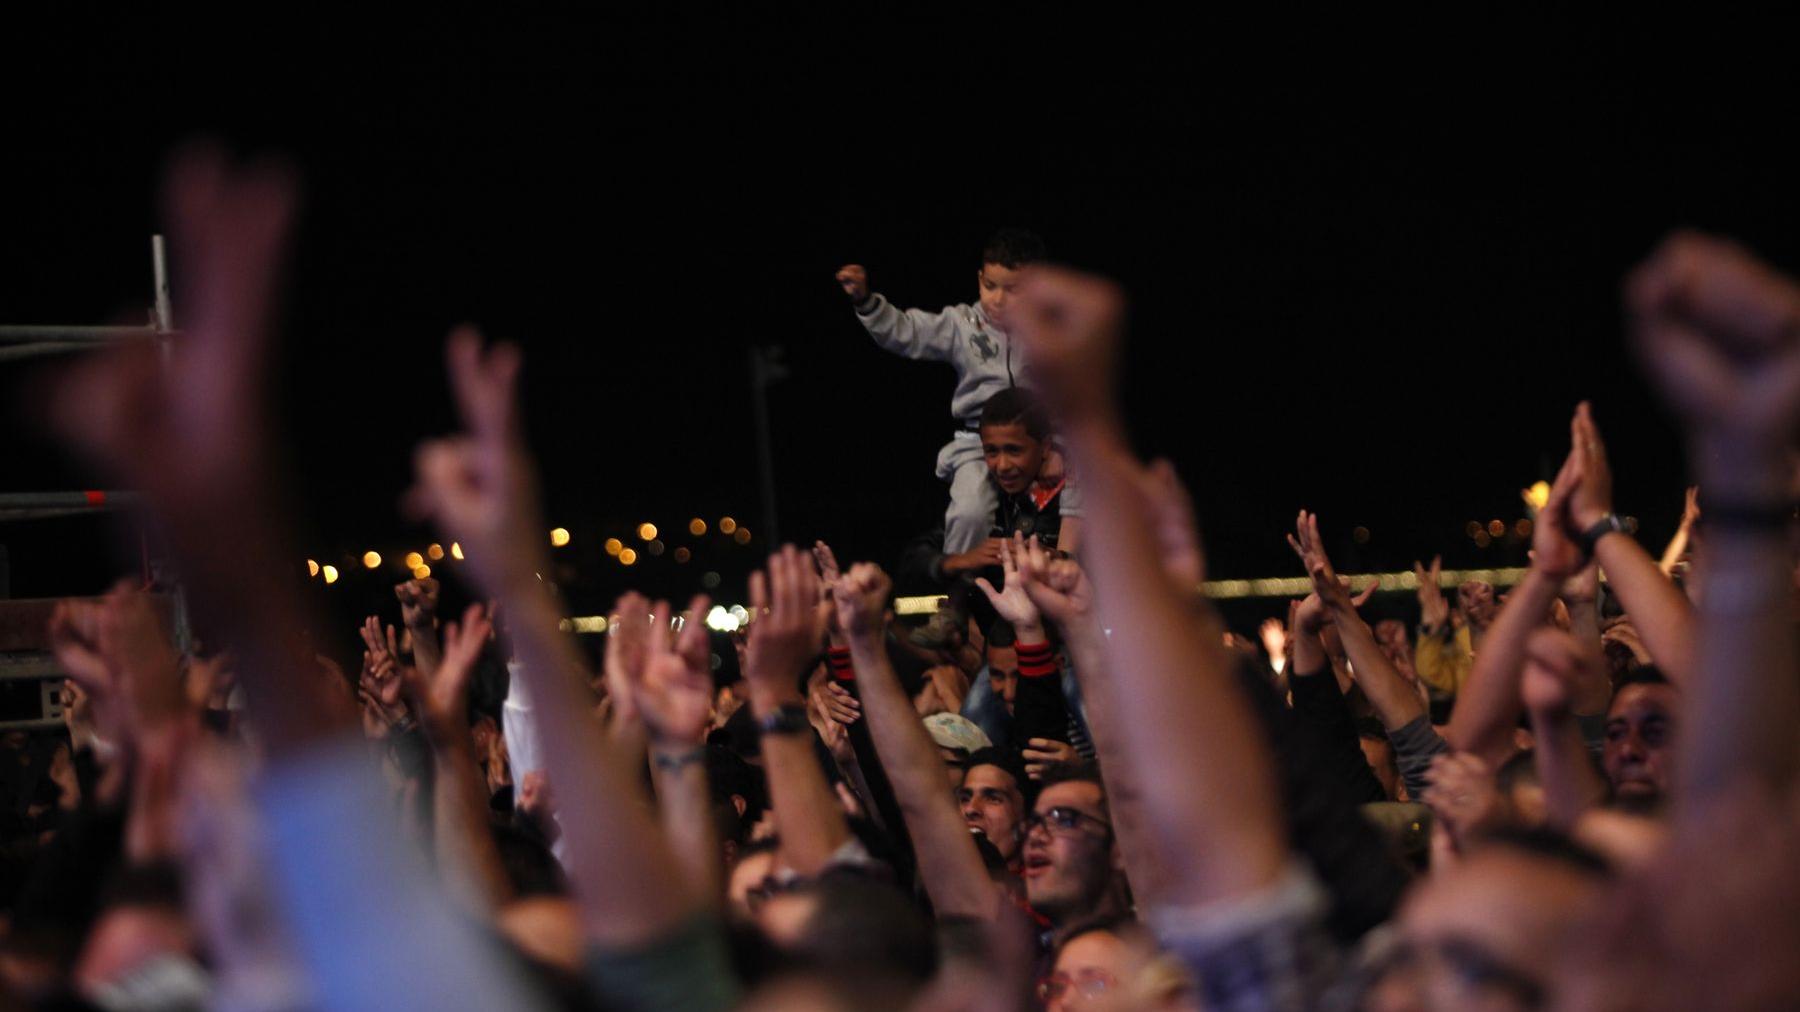 Chaque année, le festival Mawazine bat un nouveau record d'affluence... rendez-vous en 2013 !
